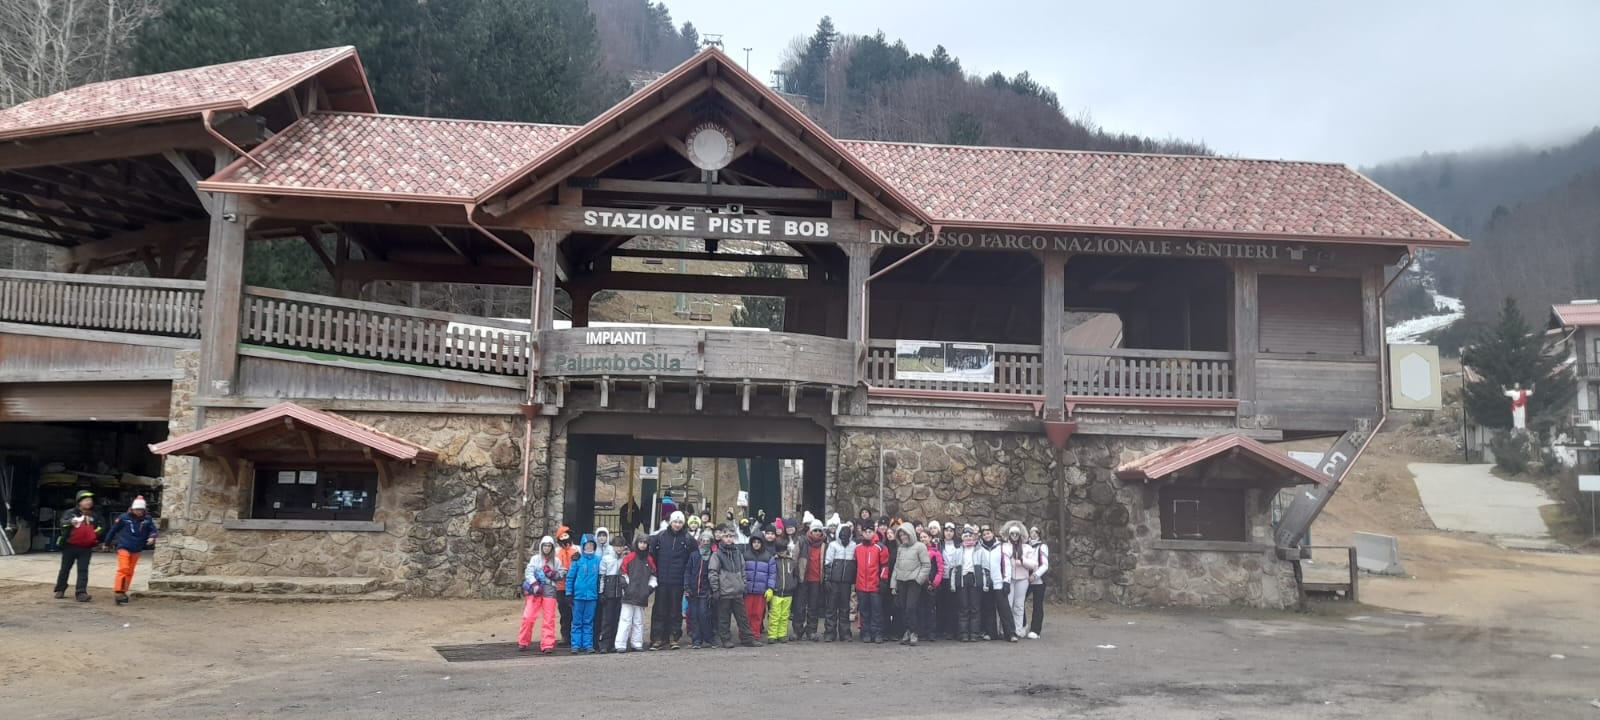 Un Viaggio sportivo sull’Altopiano della Sila in sci, snowboard e pattini sul ghiaccio per gli studenti dell’I.C. La Mela-Mazzini di Adrano